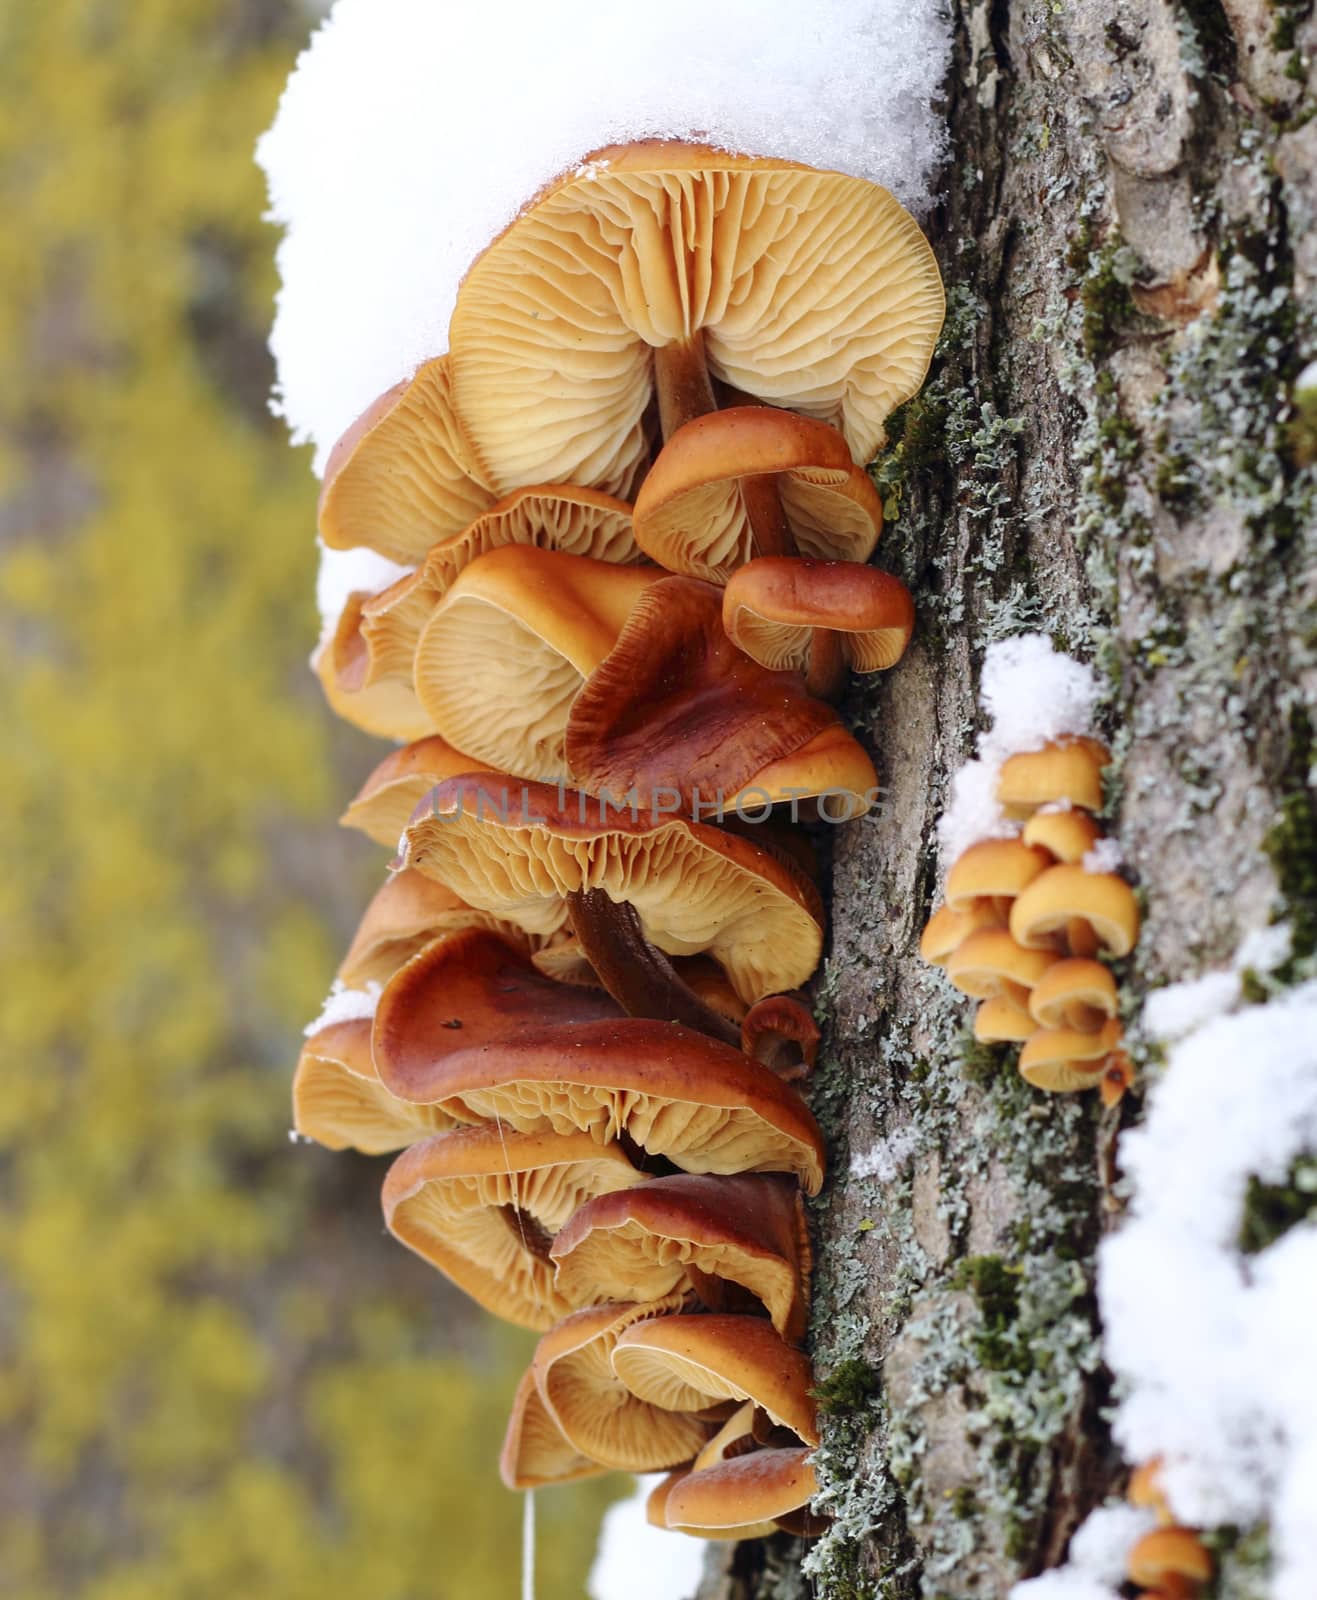 Tree mushrooms by openas